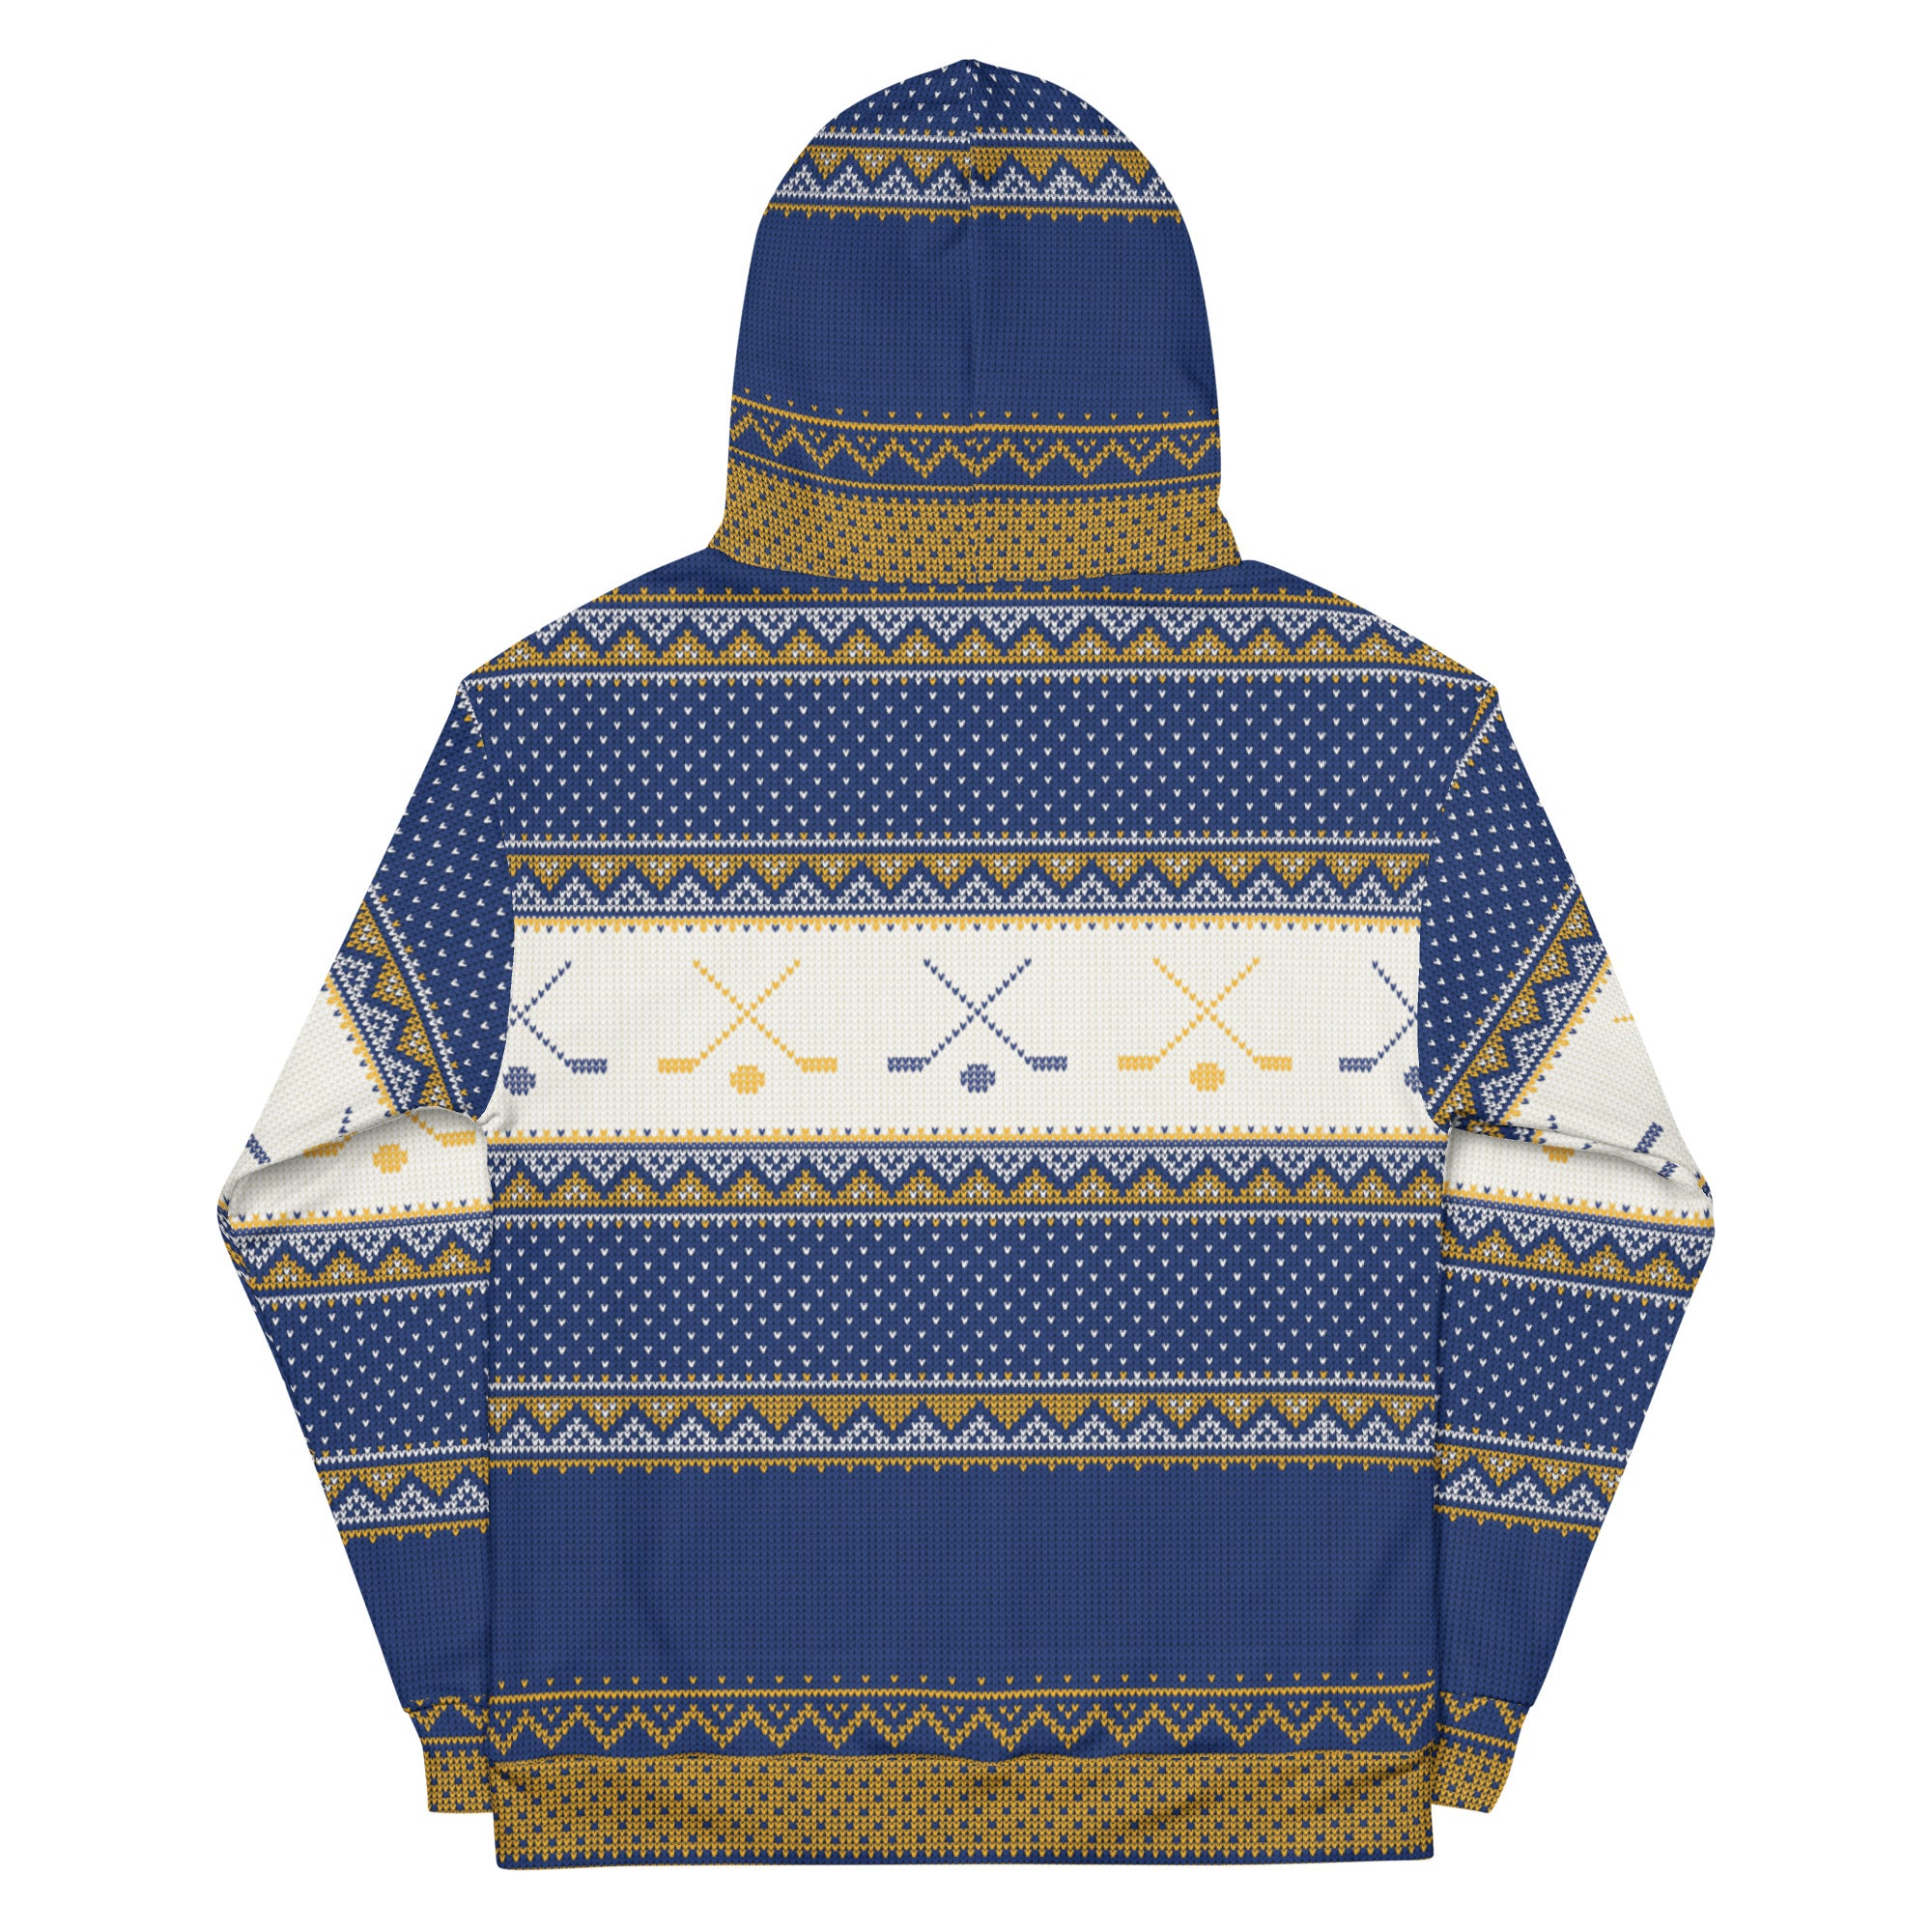 Charlestown Chiefs Christmas Sweater Unisex Hoodie